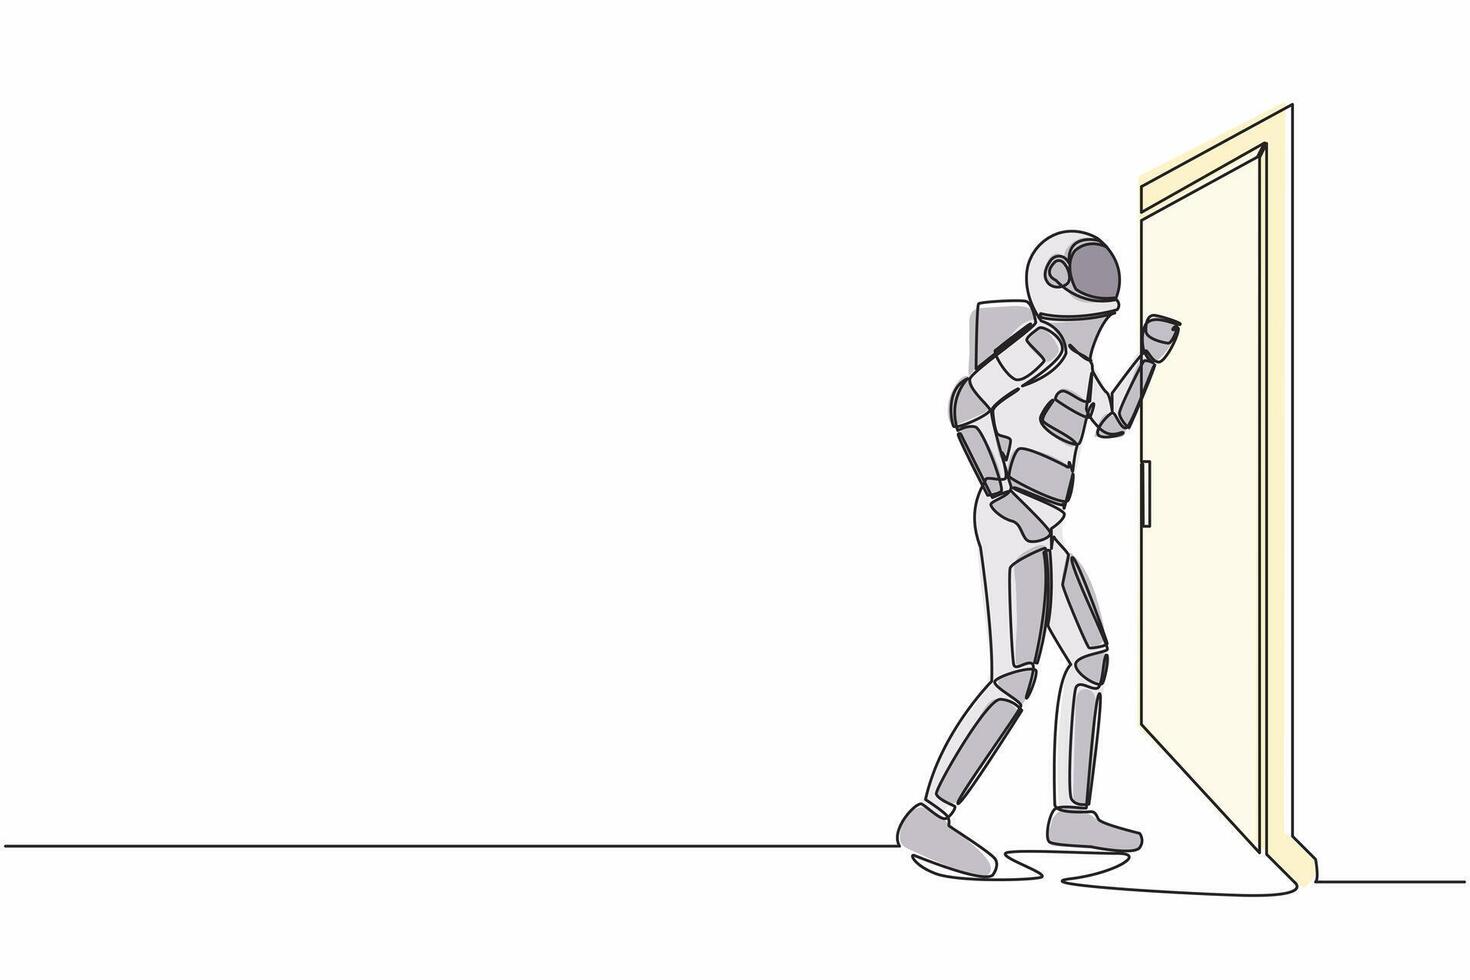 single doorlopend lijn tekening jong astronaut kloppen Bij deur in maan oppervlak. ruimtevaarder staand Bij Ingang van kamer kloppen deur. kosmonaut diep ruimte. een lijn grafisch ontwerp vector illustratie